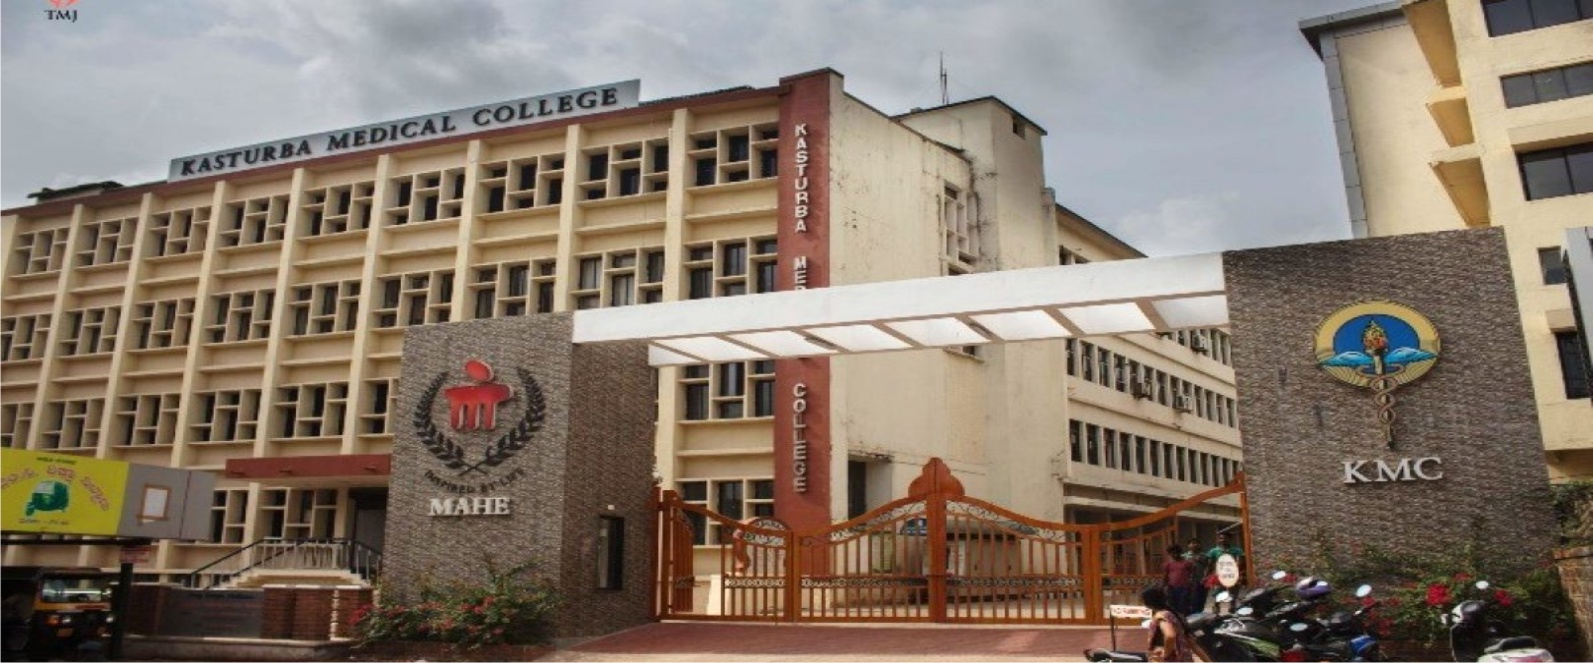 Kasturba Medical College (KMC) - Manipal